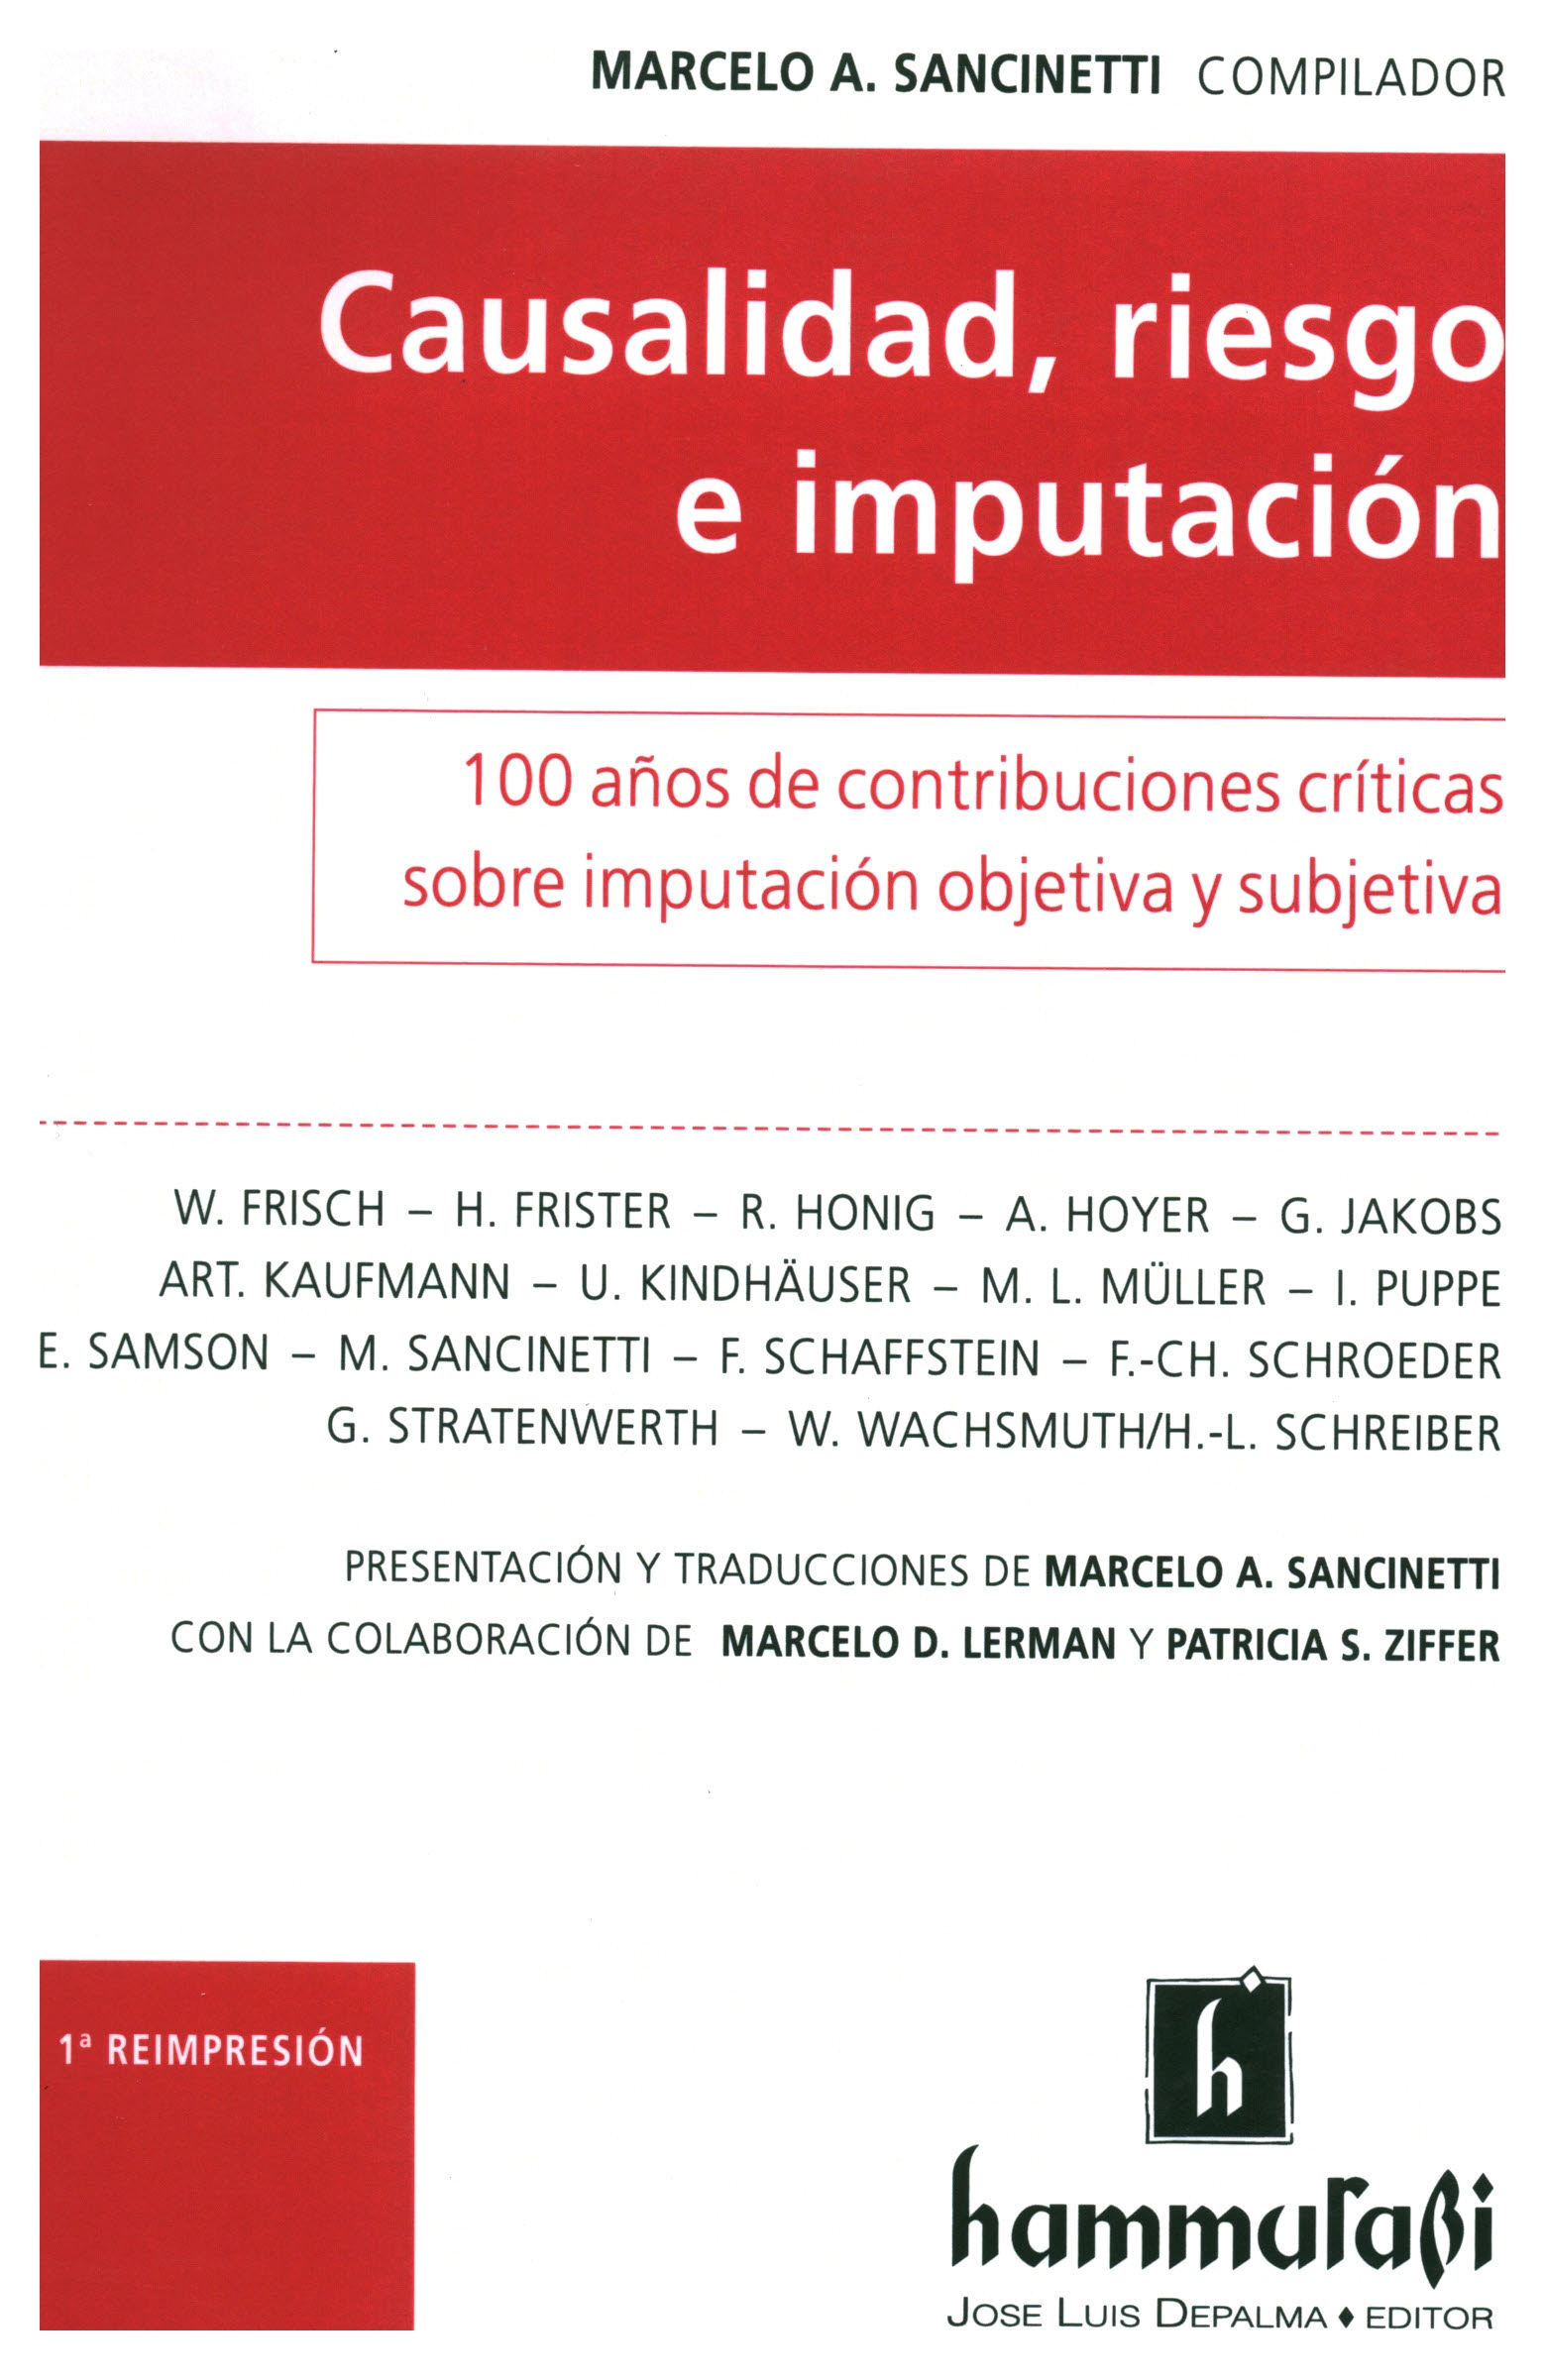 Causalidad, riesgo e imputación. 100 años de contribuciones críticas sobre imputación objetiva y subjetiva